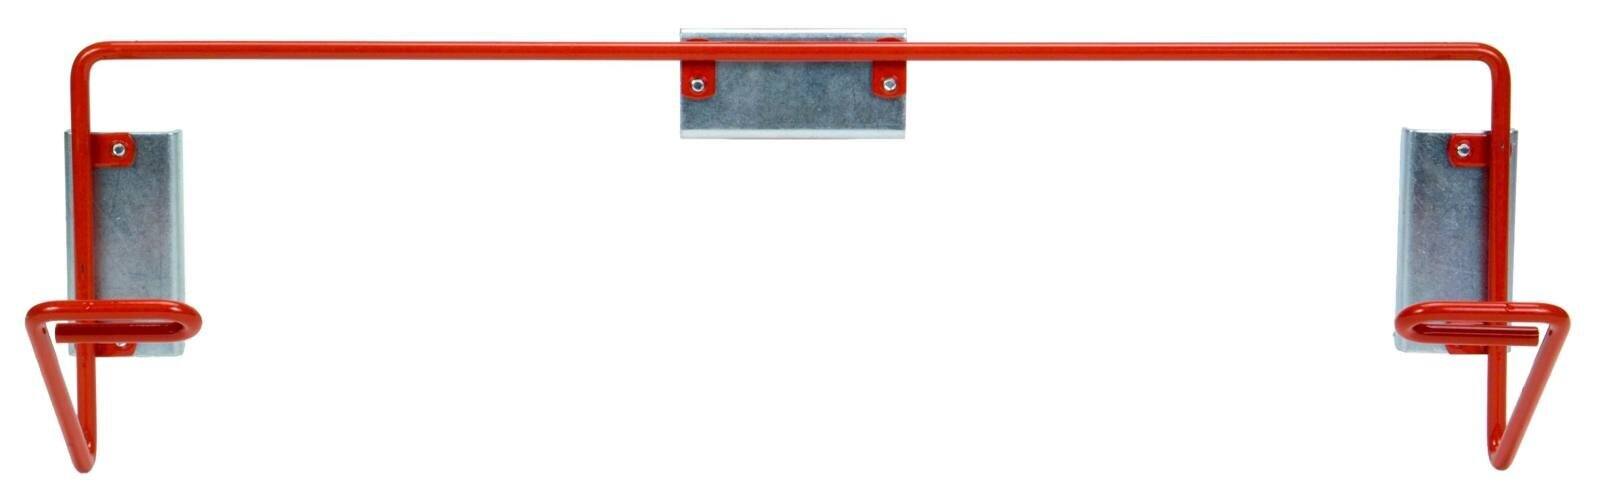 3M Dispenser für Kabinenschutzfolie transparent, Rot #36863